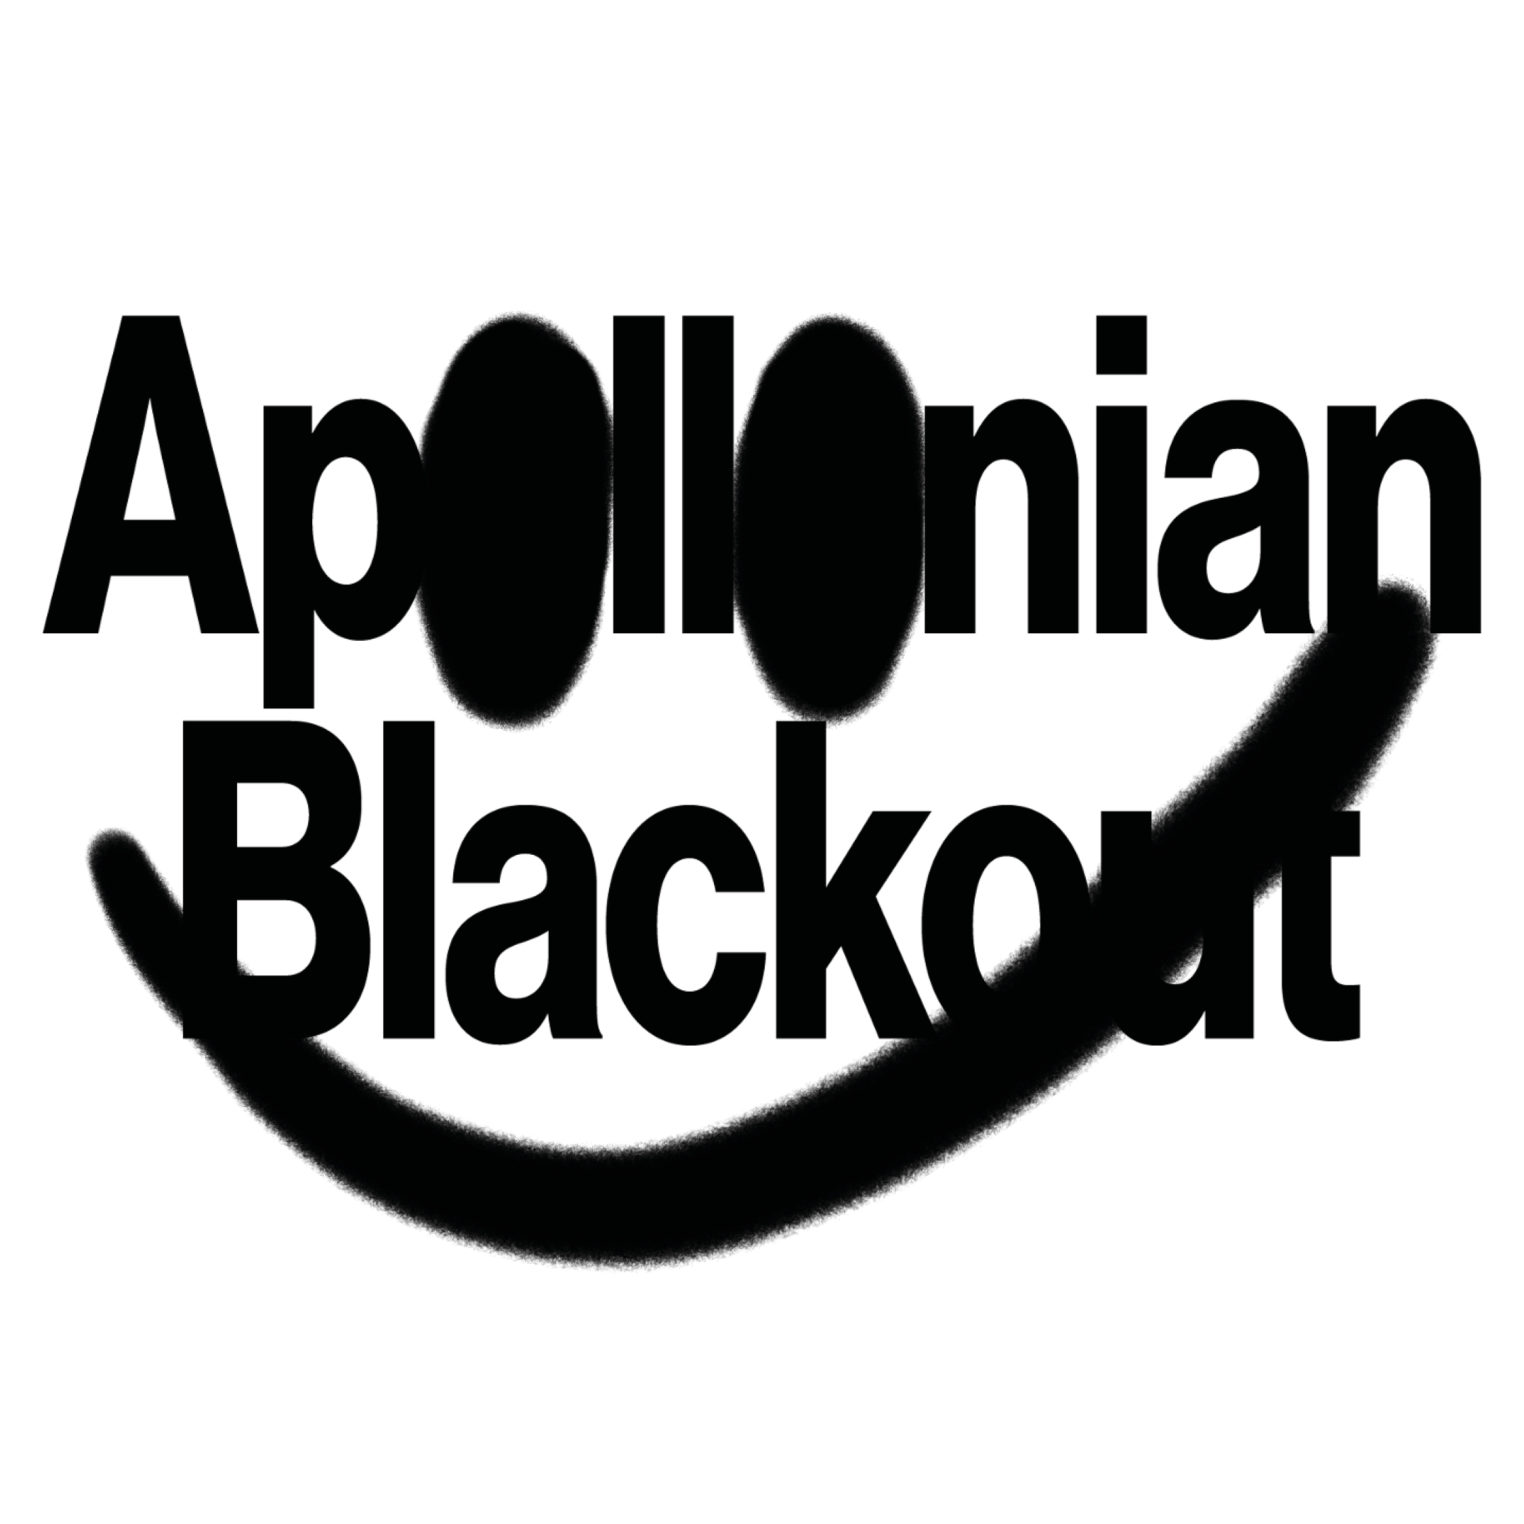 APOLLONIAN BLACKOUT